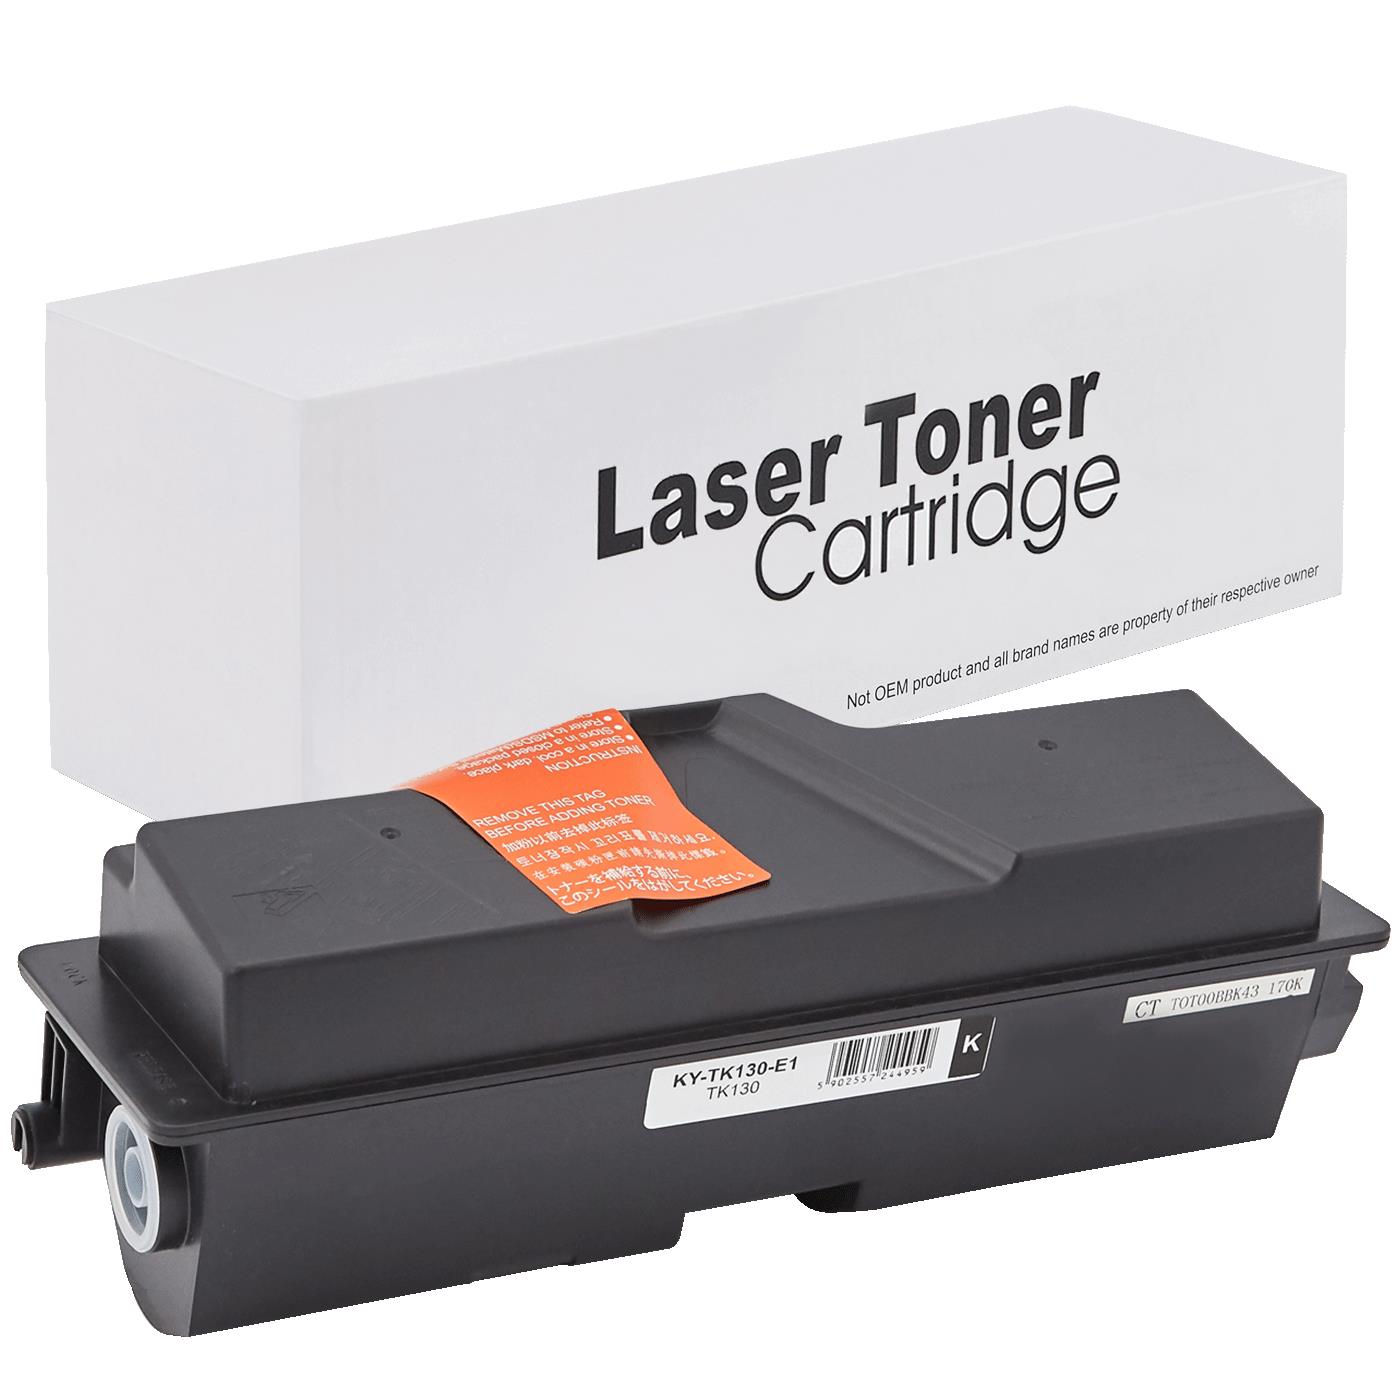 съвместима тонер касета за принтери и печатащи устройства на Kyocera Mita 1300DN Toner KY-TK130 | TK130. Ниски цени, прецизно изпълнение, високо качество.